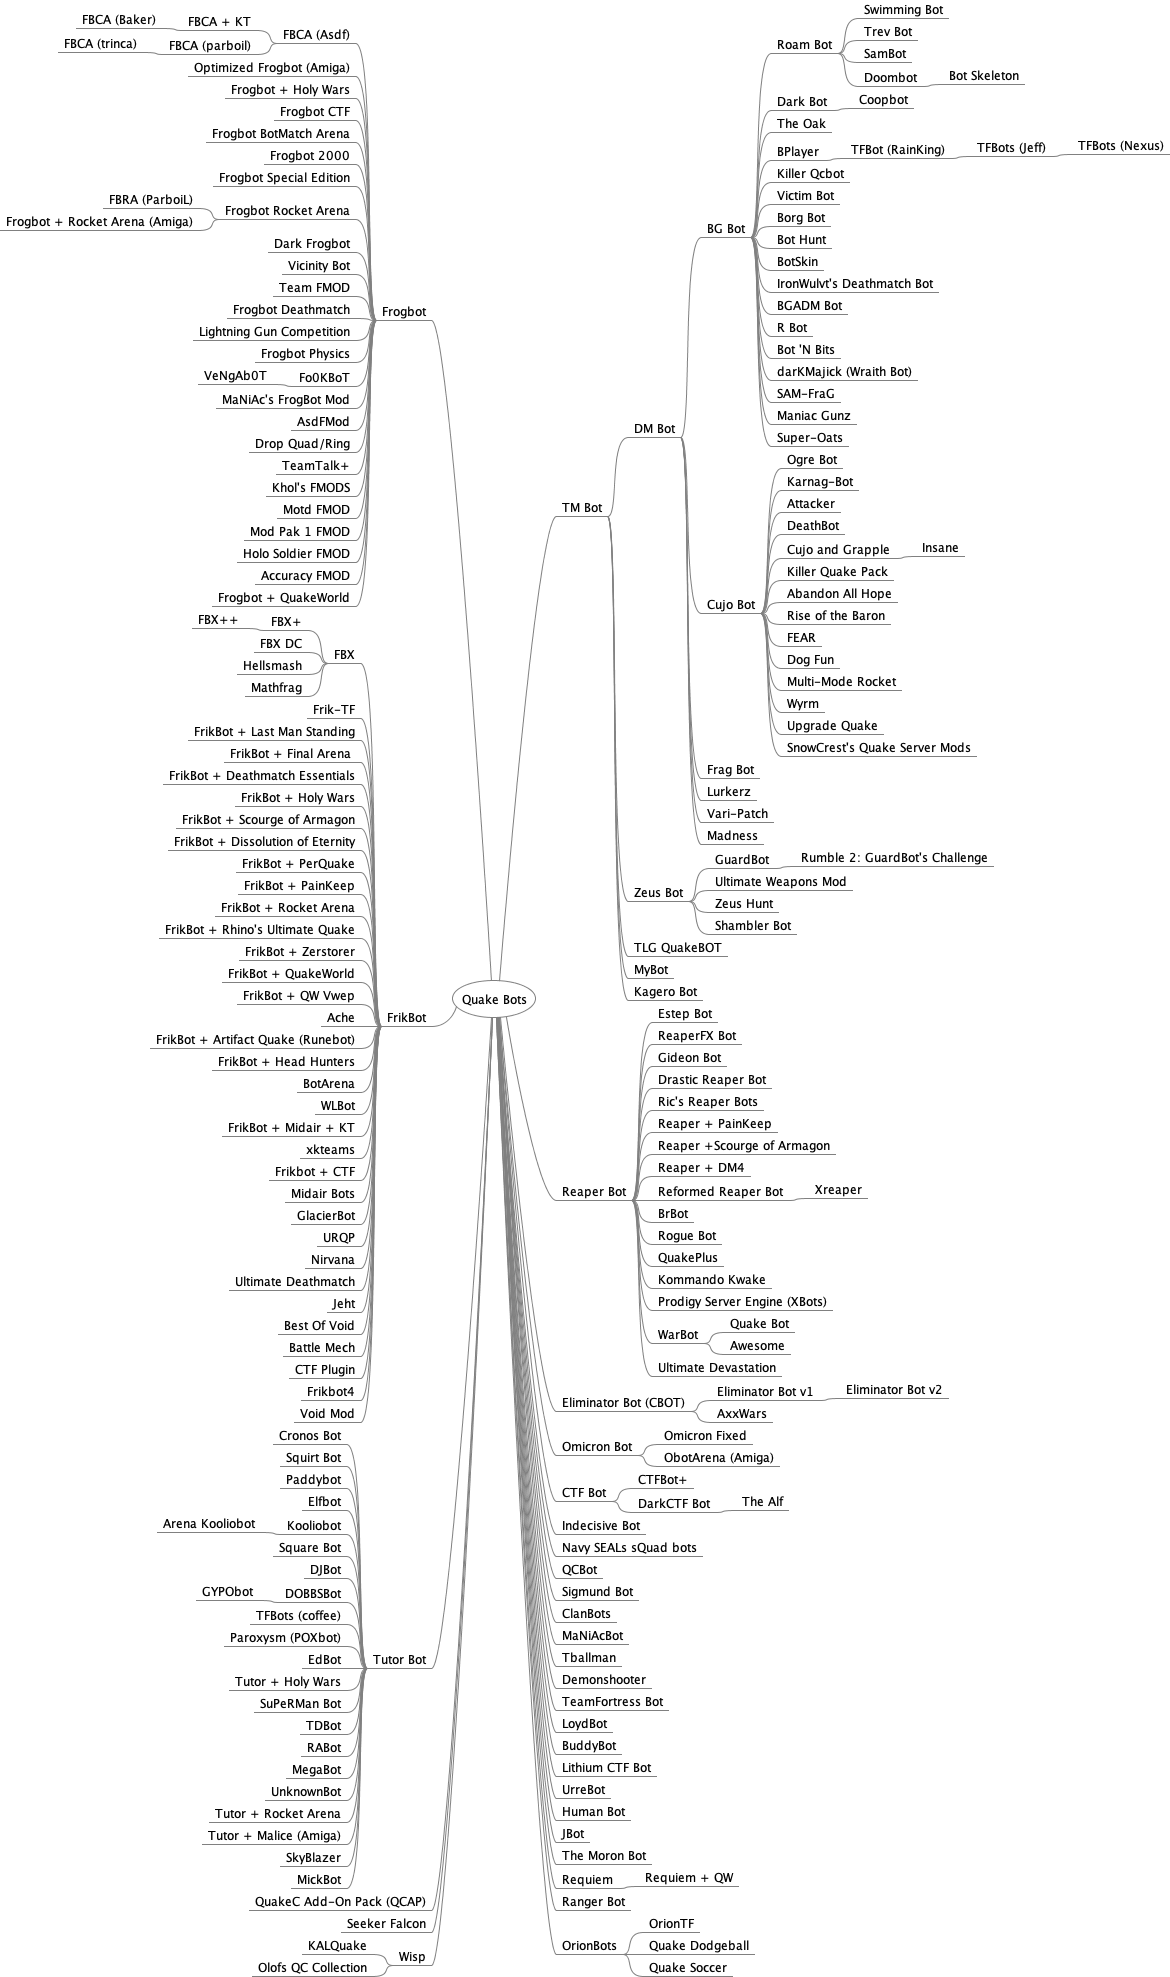 Quake Bot Genealogy